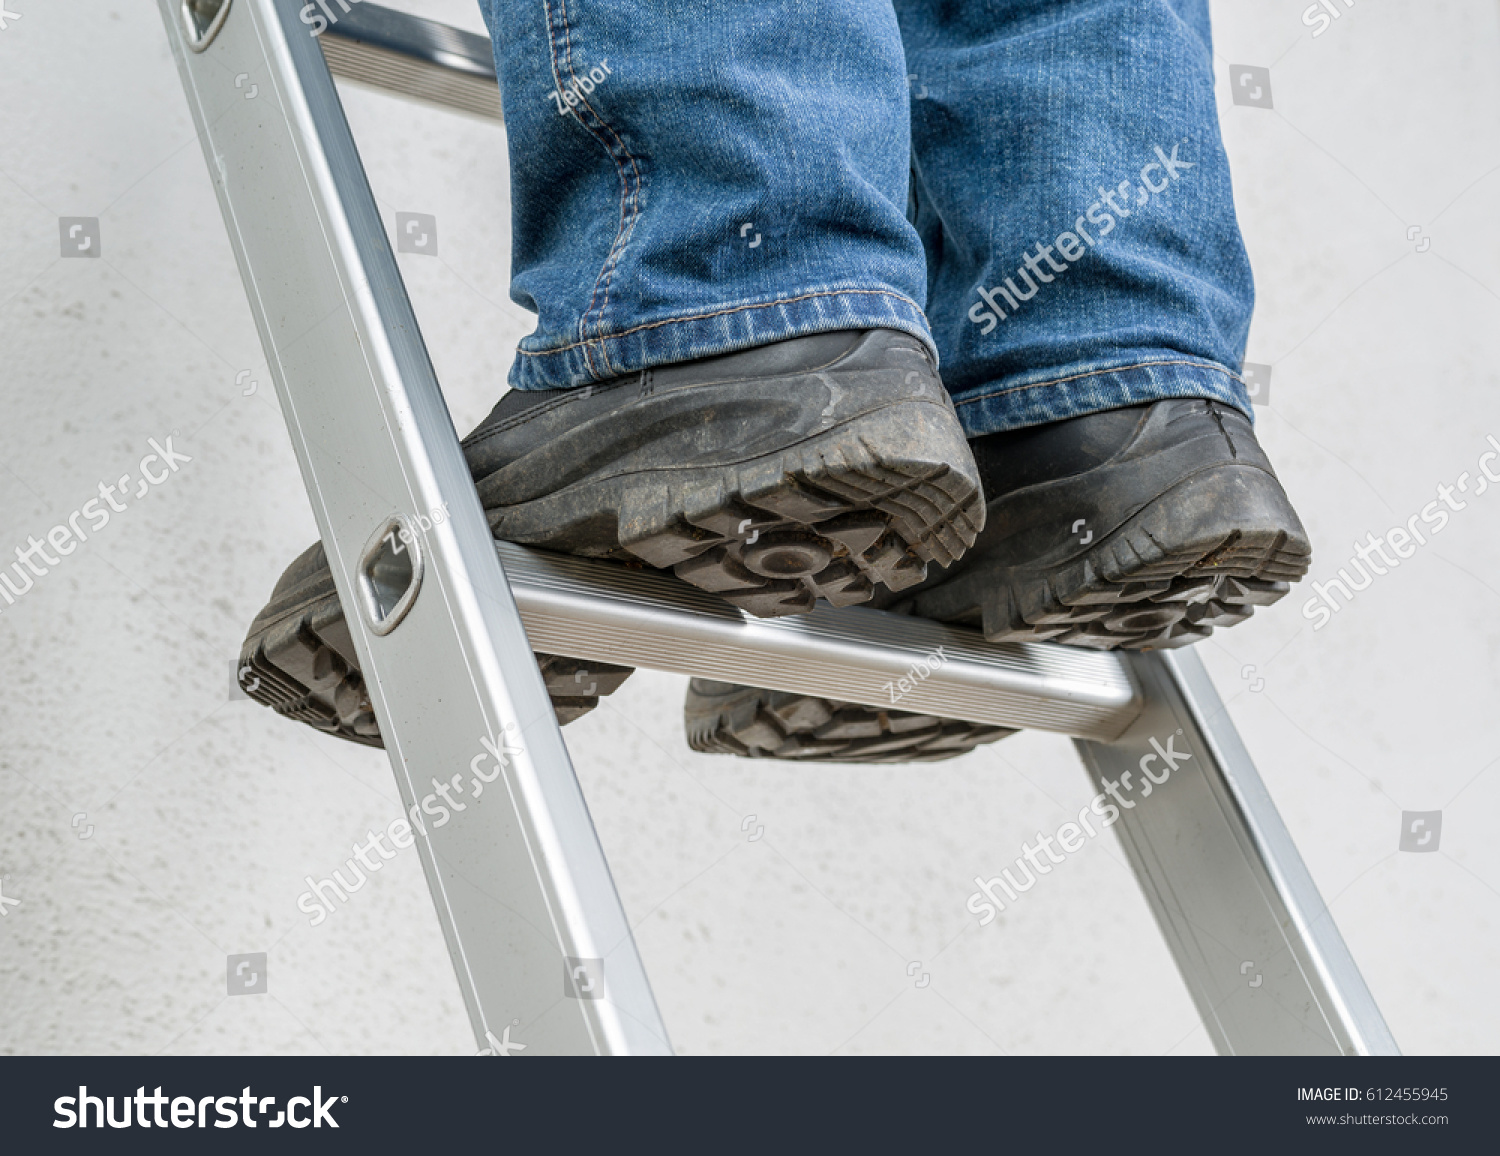 A man stands on a ladder #612455945